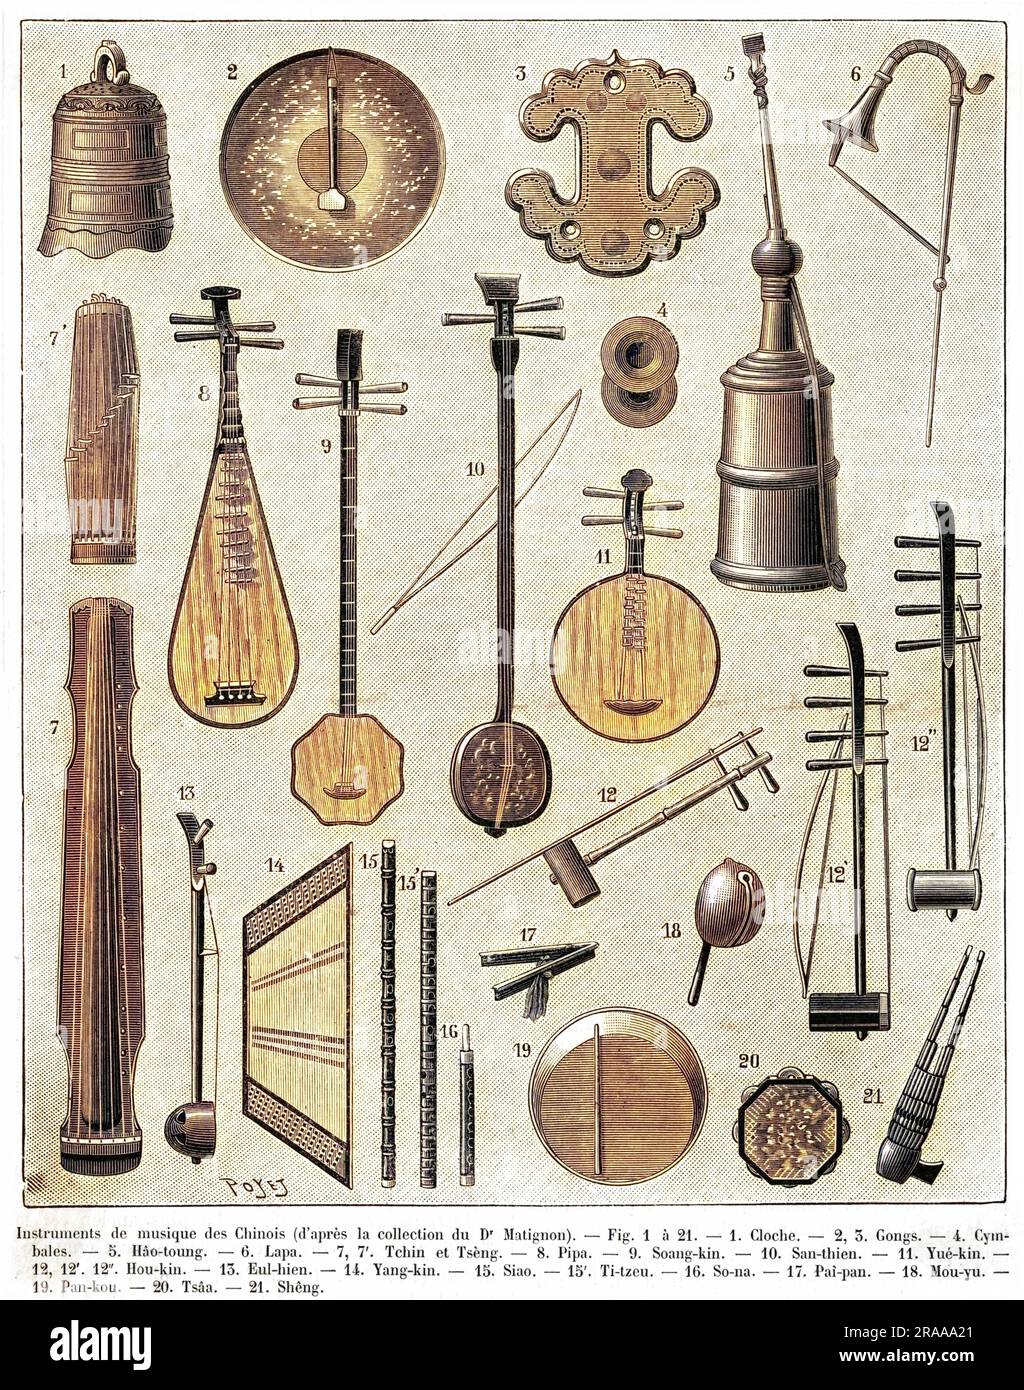 Eine Auswahl chinesischer Musikinstrumente, einschließlich einer Glocke (1), gong (2), Becken (4), Guqin oder siebensträngiger Zither (7), einer Pipa oder viersträngiger Laute (8), Yueqin oder mondförmige Laute (11 14), Shamisen (10 15), erhu oder Spike Fiddle (13), auch bekannt als siang-Cangao (21) und Xangao (). Datum: 1895 Stockfoto